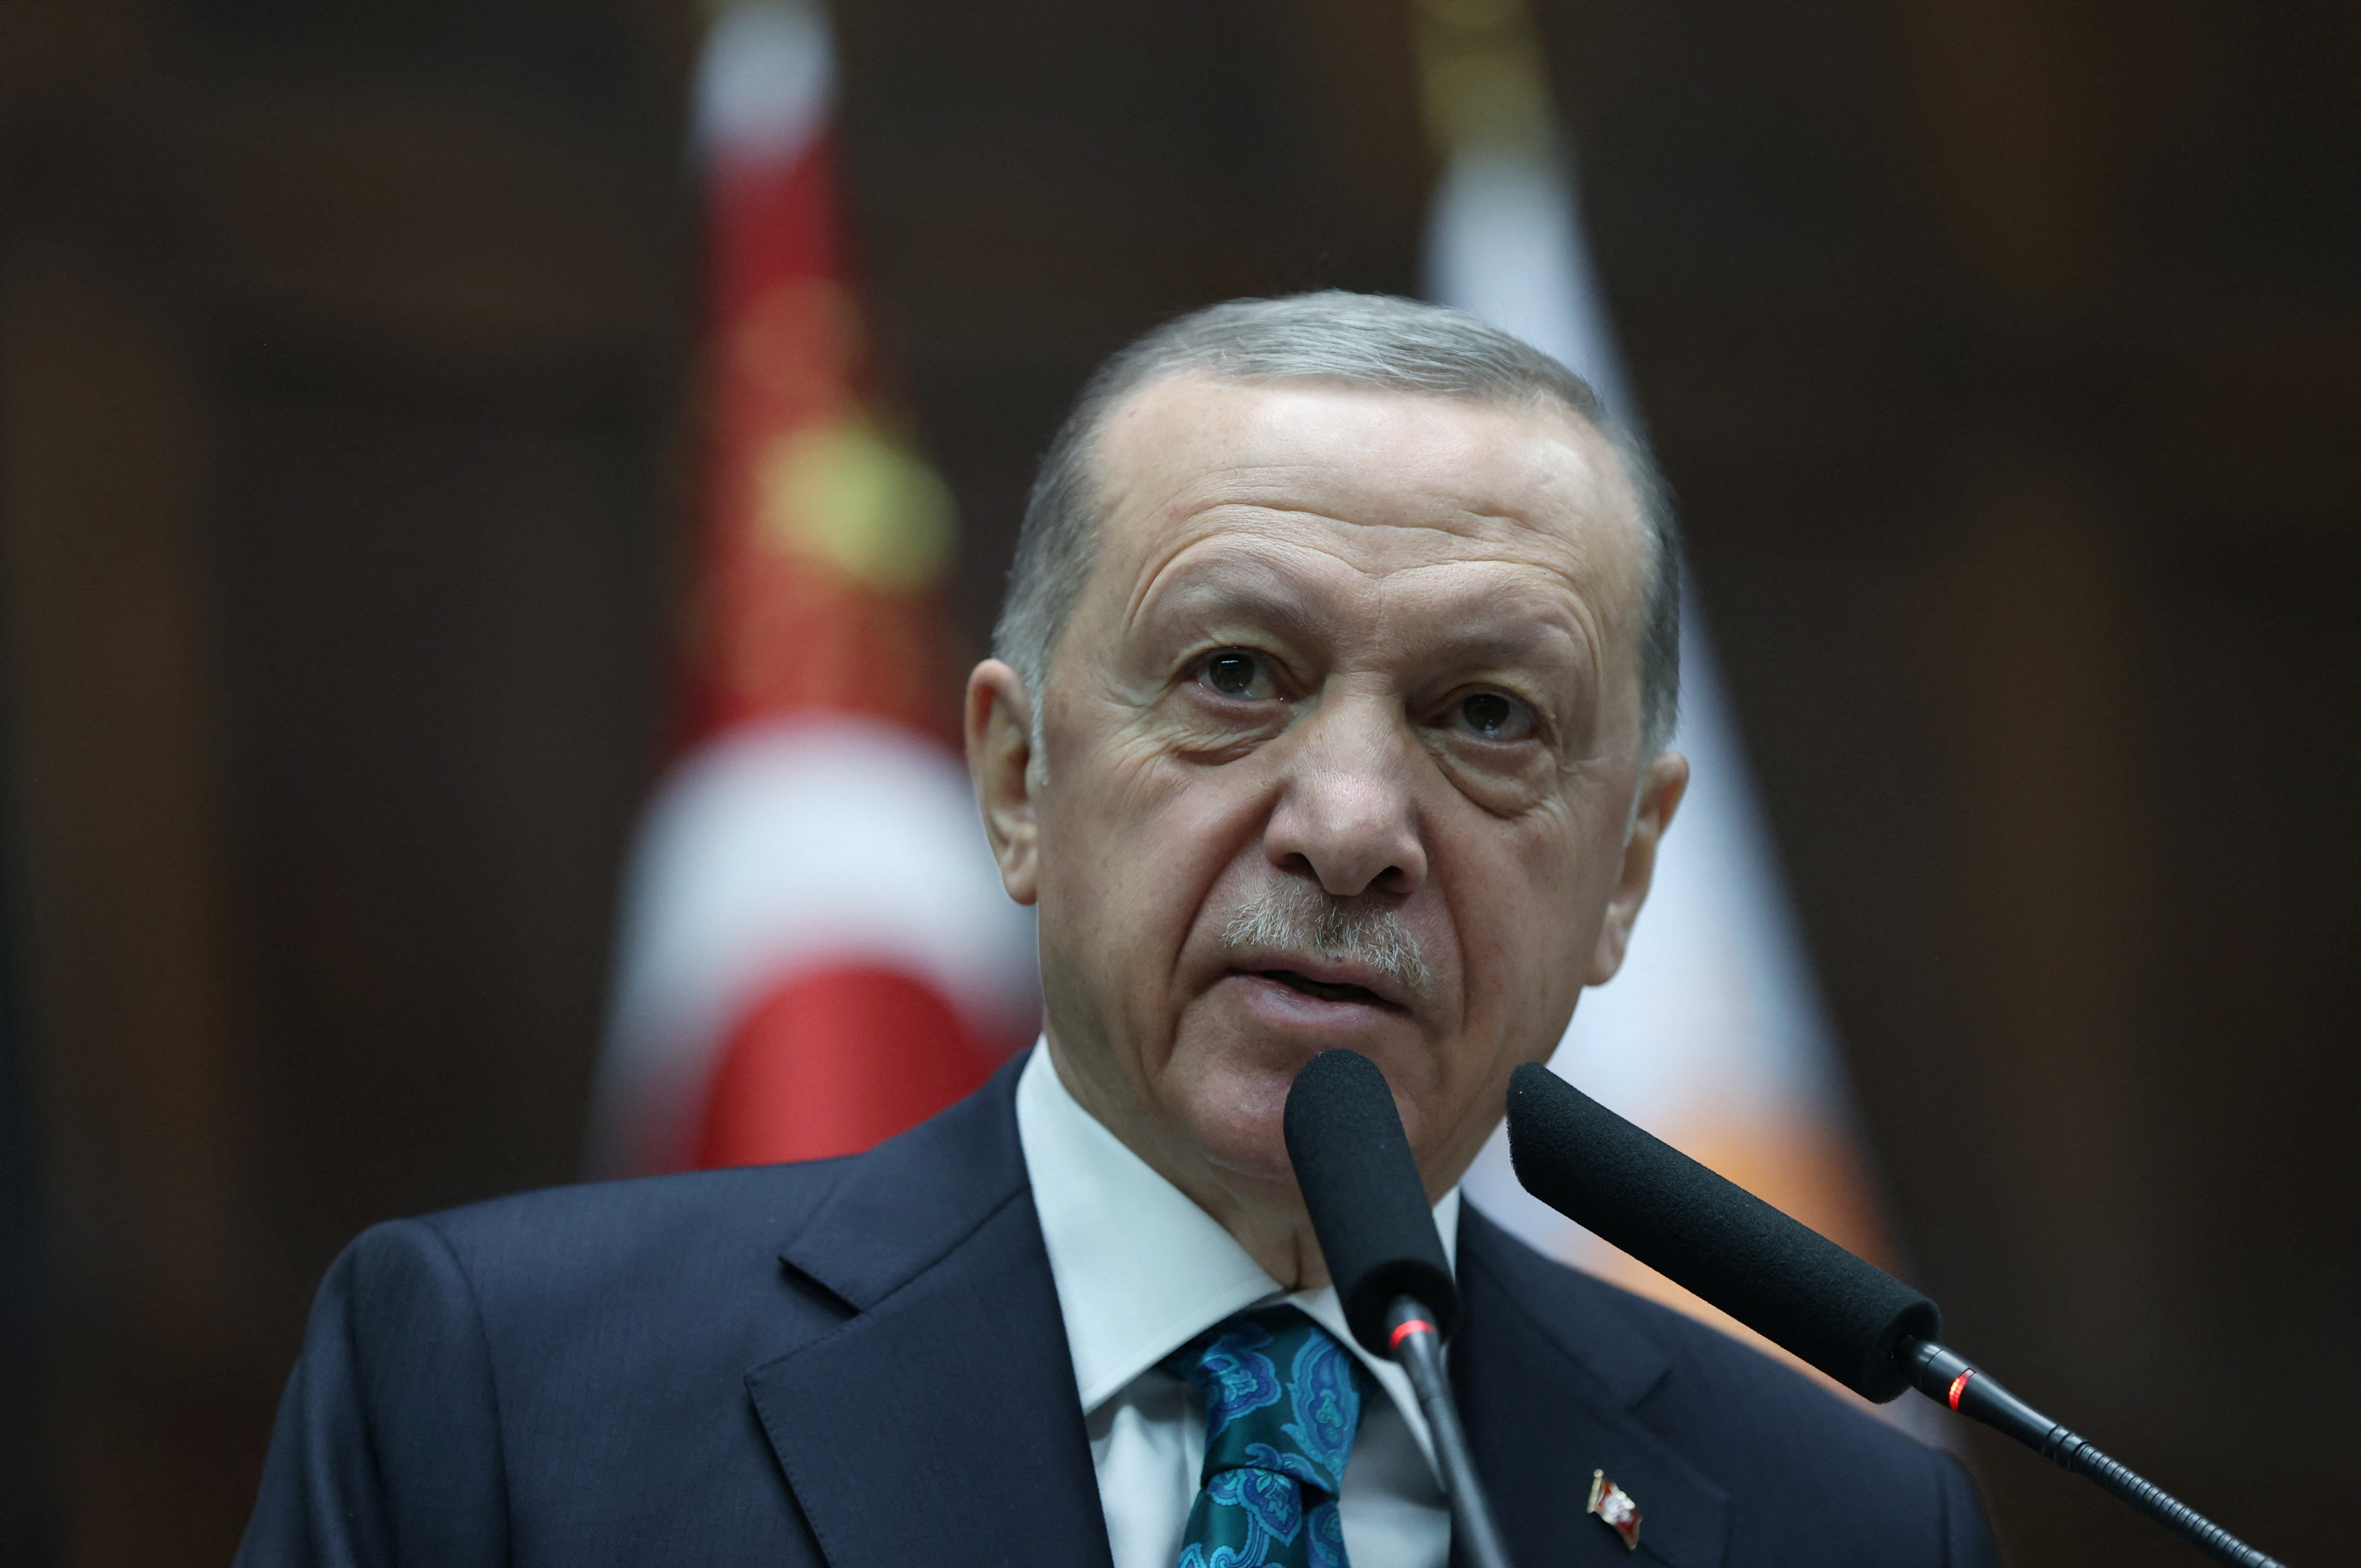 La Junta Electoral de Turquía respaldó a Erdogan en su candidatura a la presidencia y rechazó el recurso de la oposición (REUTERS)